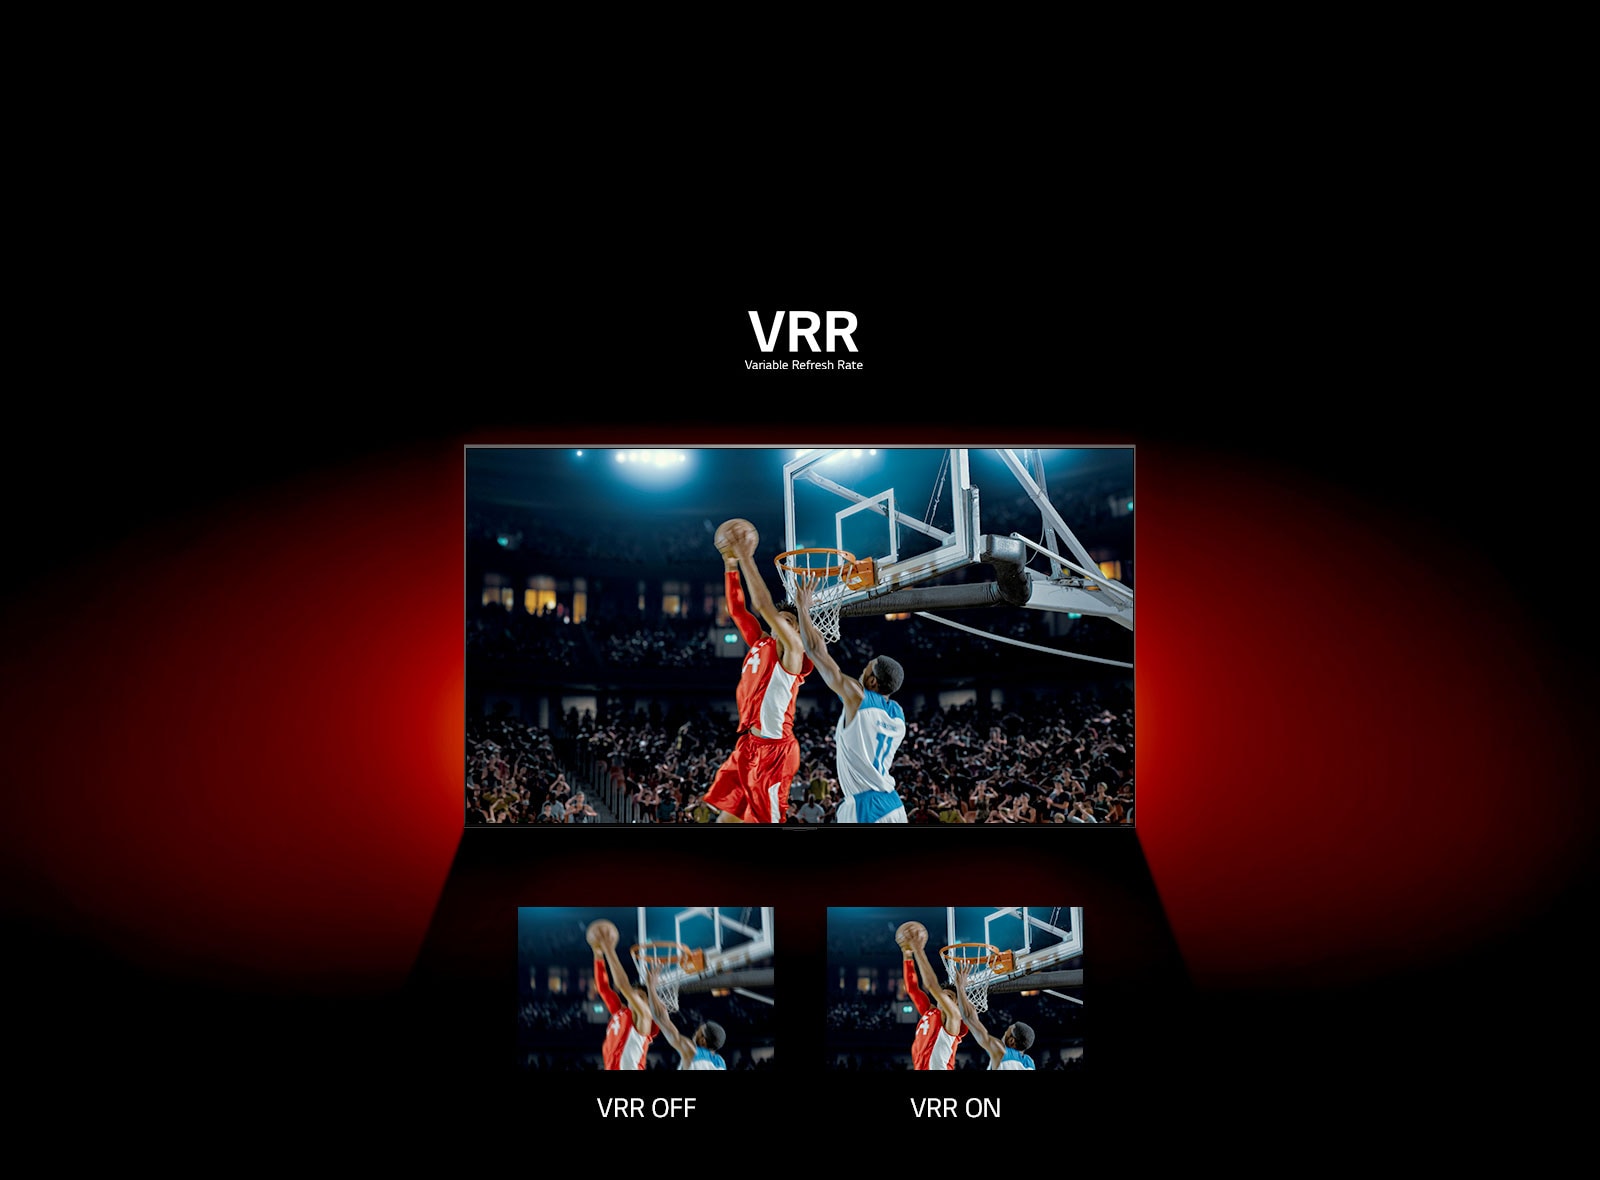 Μια τηλεόραση QNED μπροστά από έναν κόκκινο τοίχο - η εικόνα στην οθόνη δείχνει έναν αγώνα μπάσκετ με δύο παίκτες που παίζουν. Ακριβώς από κάτω, υπάρχουν δύο πλαίσια εικόνας. Στα αριστερά λέει "VRR OFF" και δείχνει μια θολή εικόνα της ίδιας εικόνας και στα δεξιά λέει "VRR ON" και δείχνει την ίδια εικόνα.